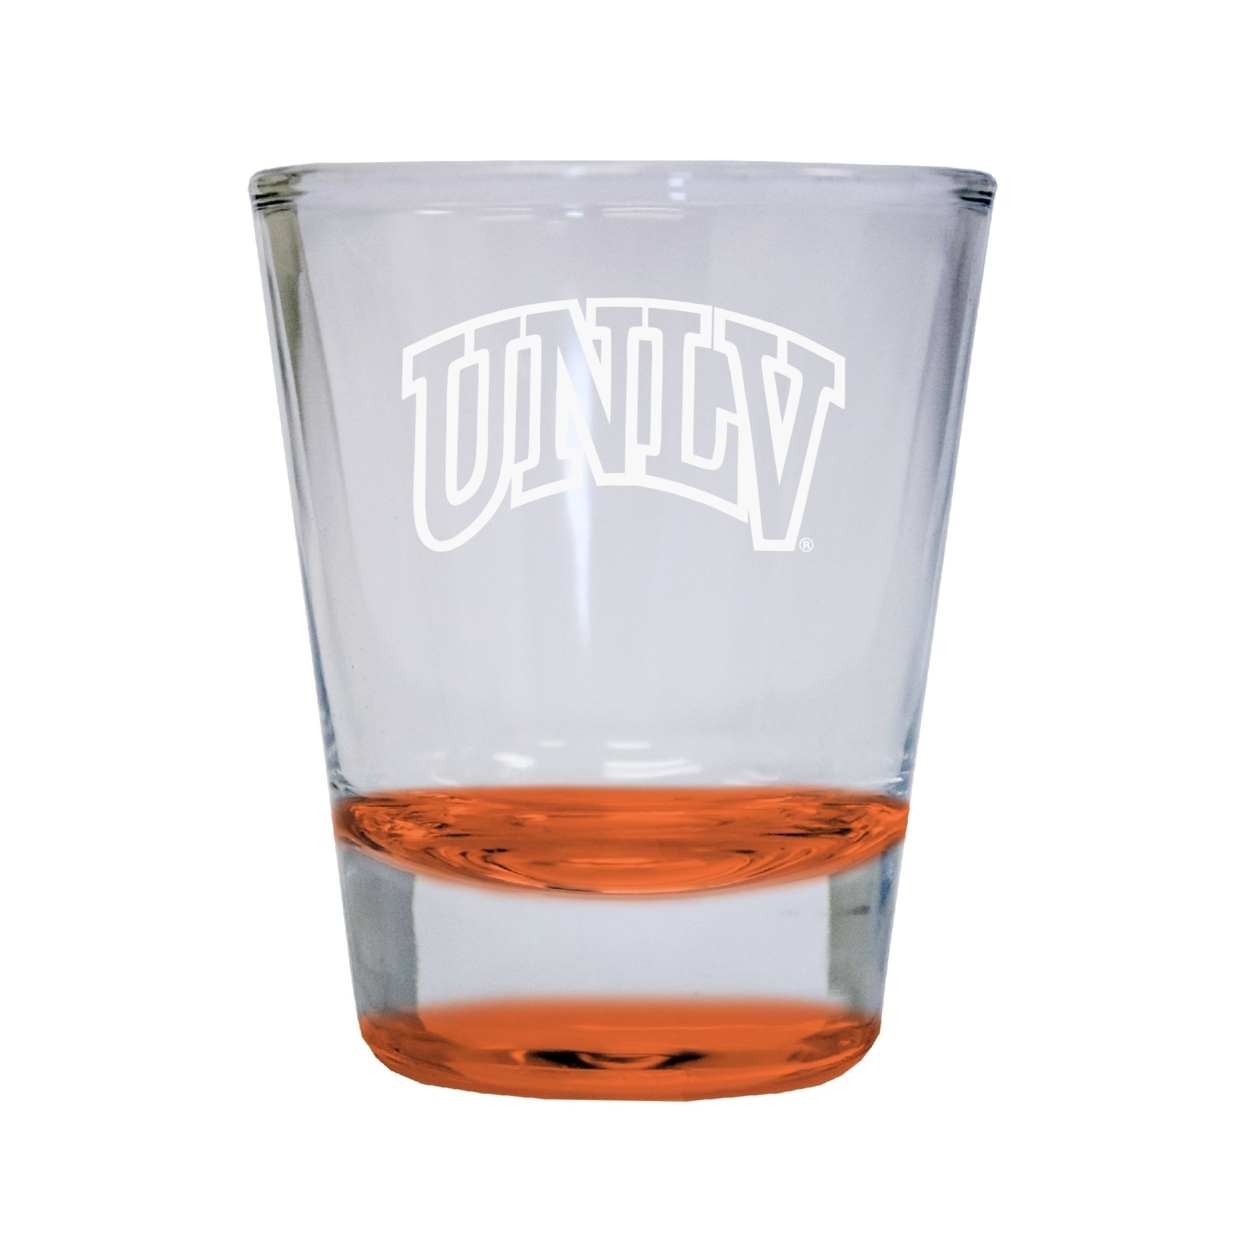 UNLV Rebels Etched Round Shot Glass 2 Oz Orange